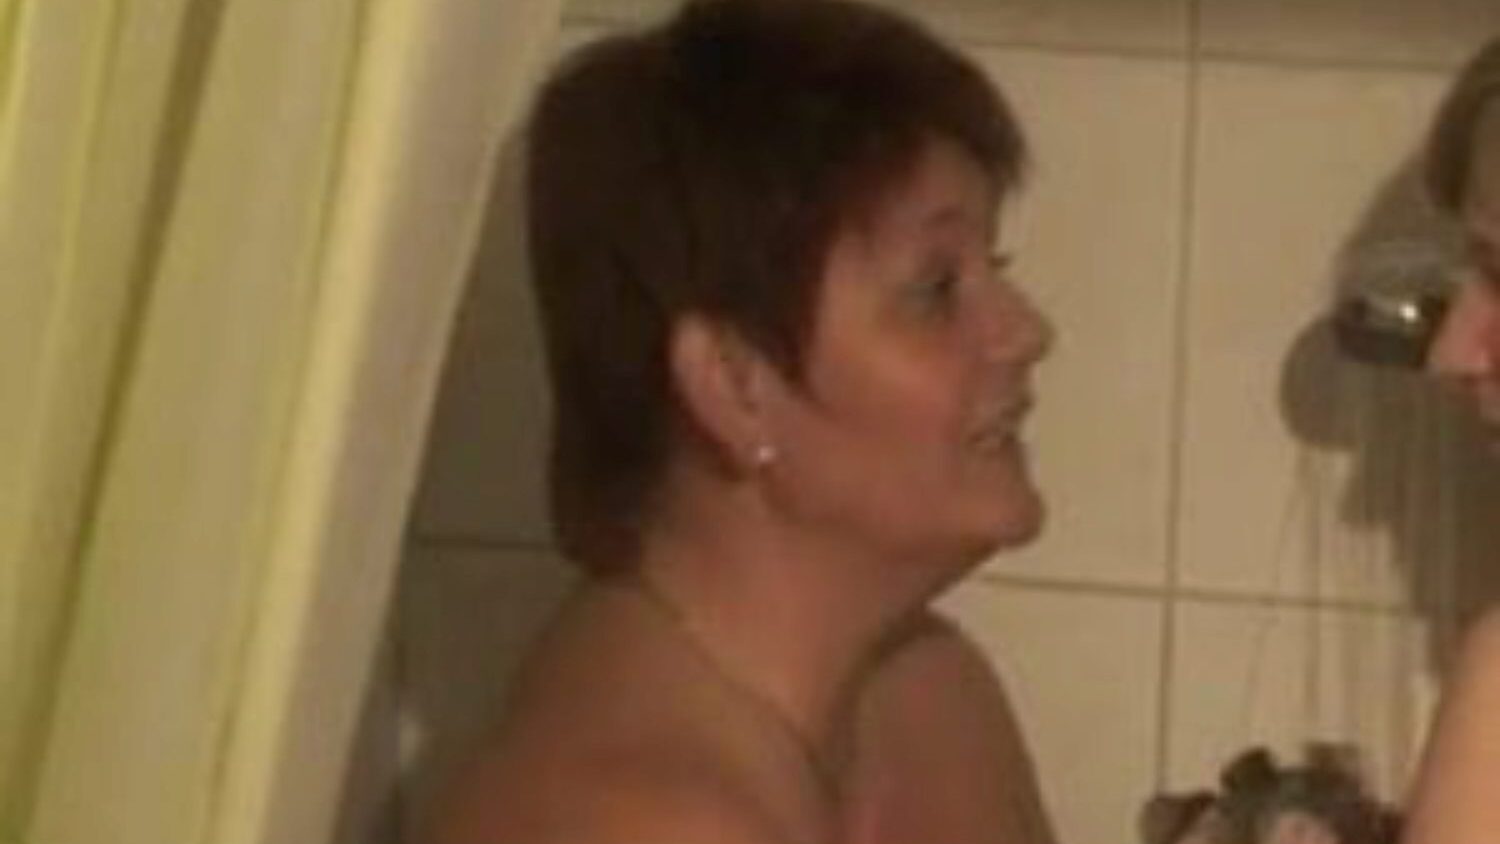 dvě bi-dívky sprchování: lesbické porno video zdarma 76 - xhamster sledovat 2 bi-dívky sprchování trubice milování filmová scéna pro free-for-all na xhamster, s dominantní sbírkou německé lesbičky, matka bych rád šukat a bbw pornografie filmové sekvence